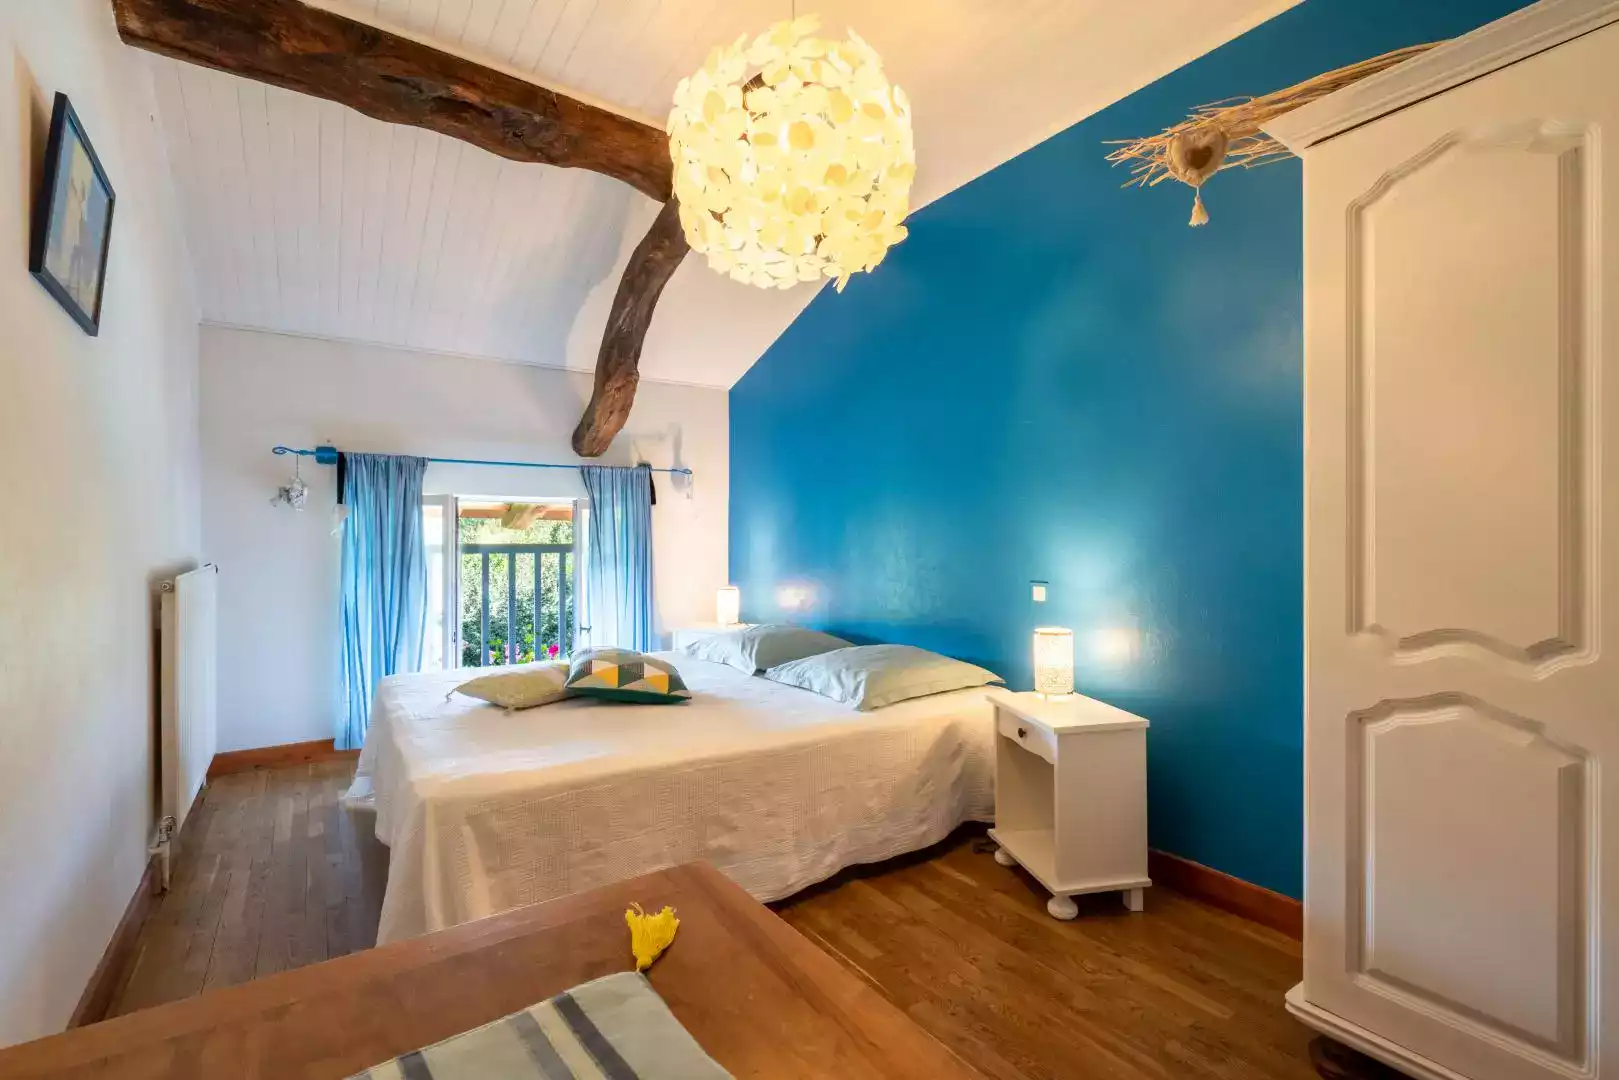 Chambre d'hôtes Bleue avec mur accentué, lit double, et décor boisé à L'agnoblens.